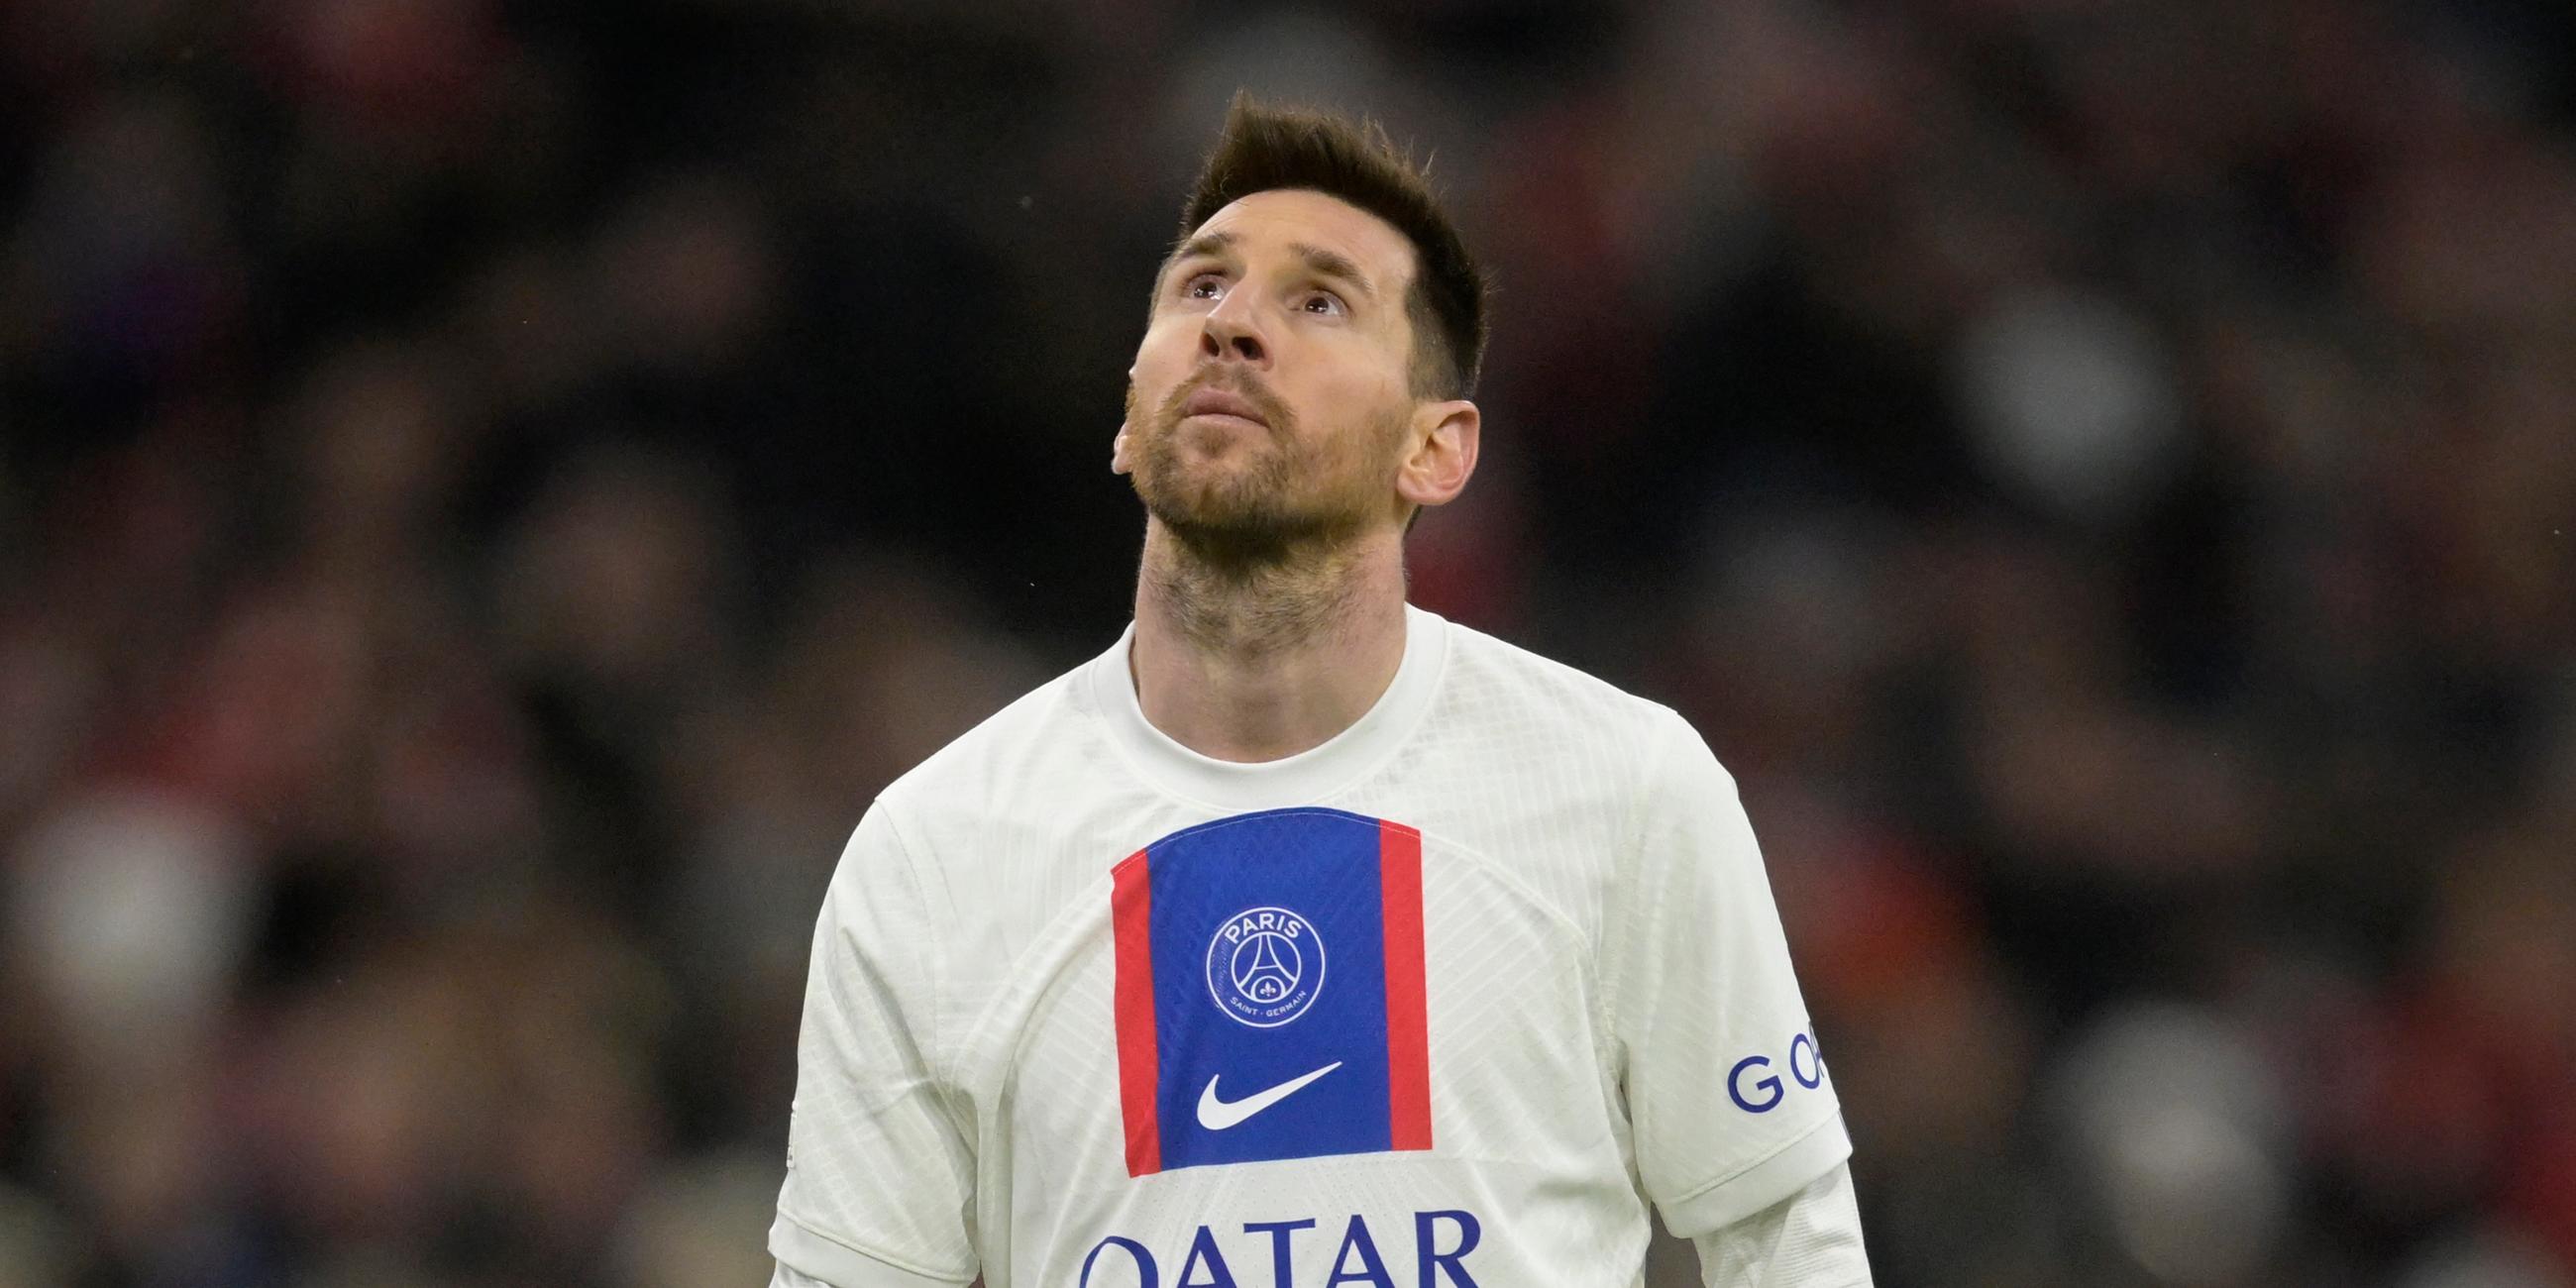 Champions League, Bayern München - PSG am 8. März 2023: Lionel Messi schaut in den Himmel